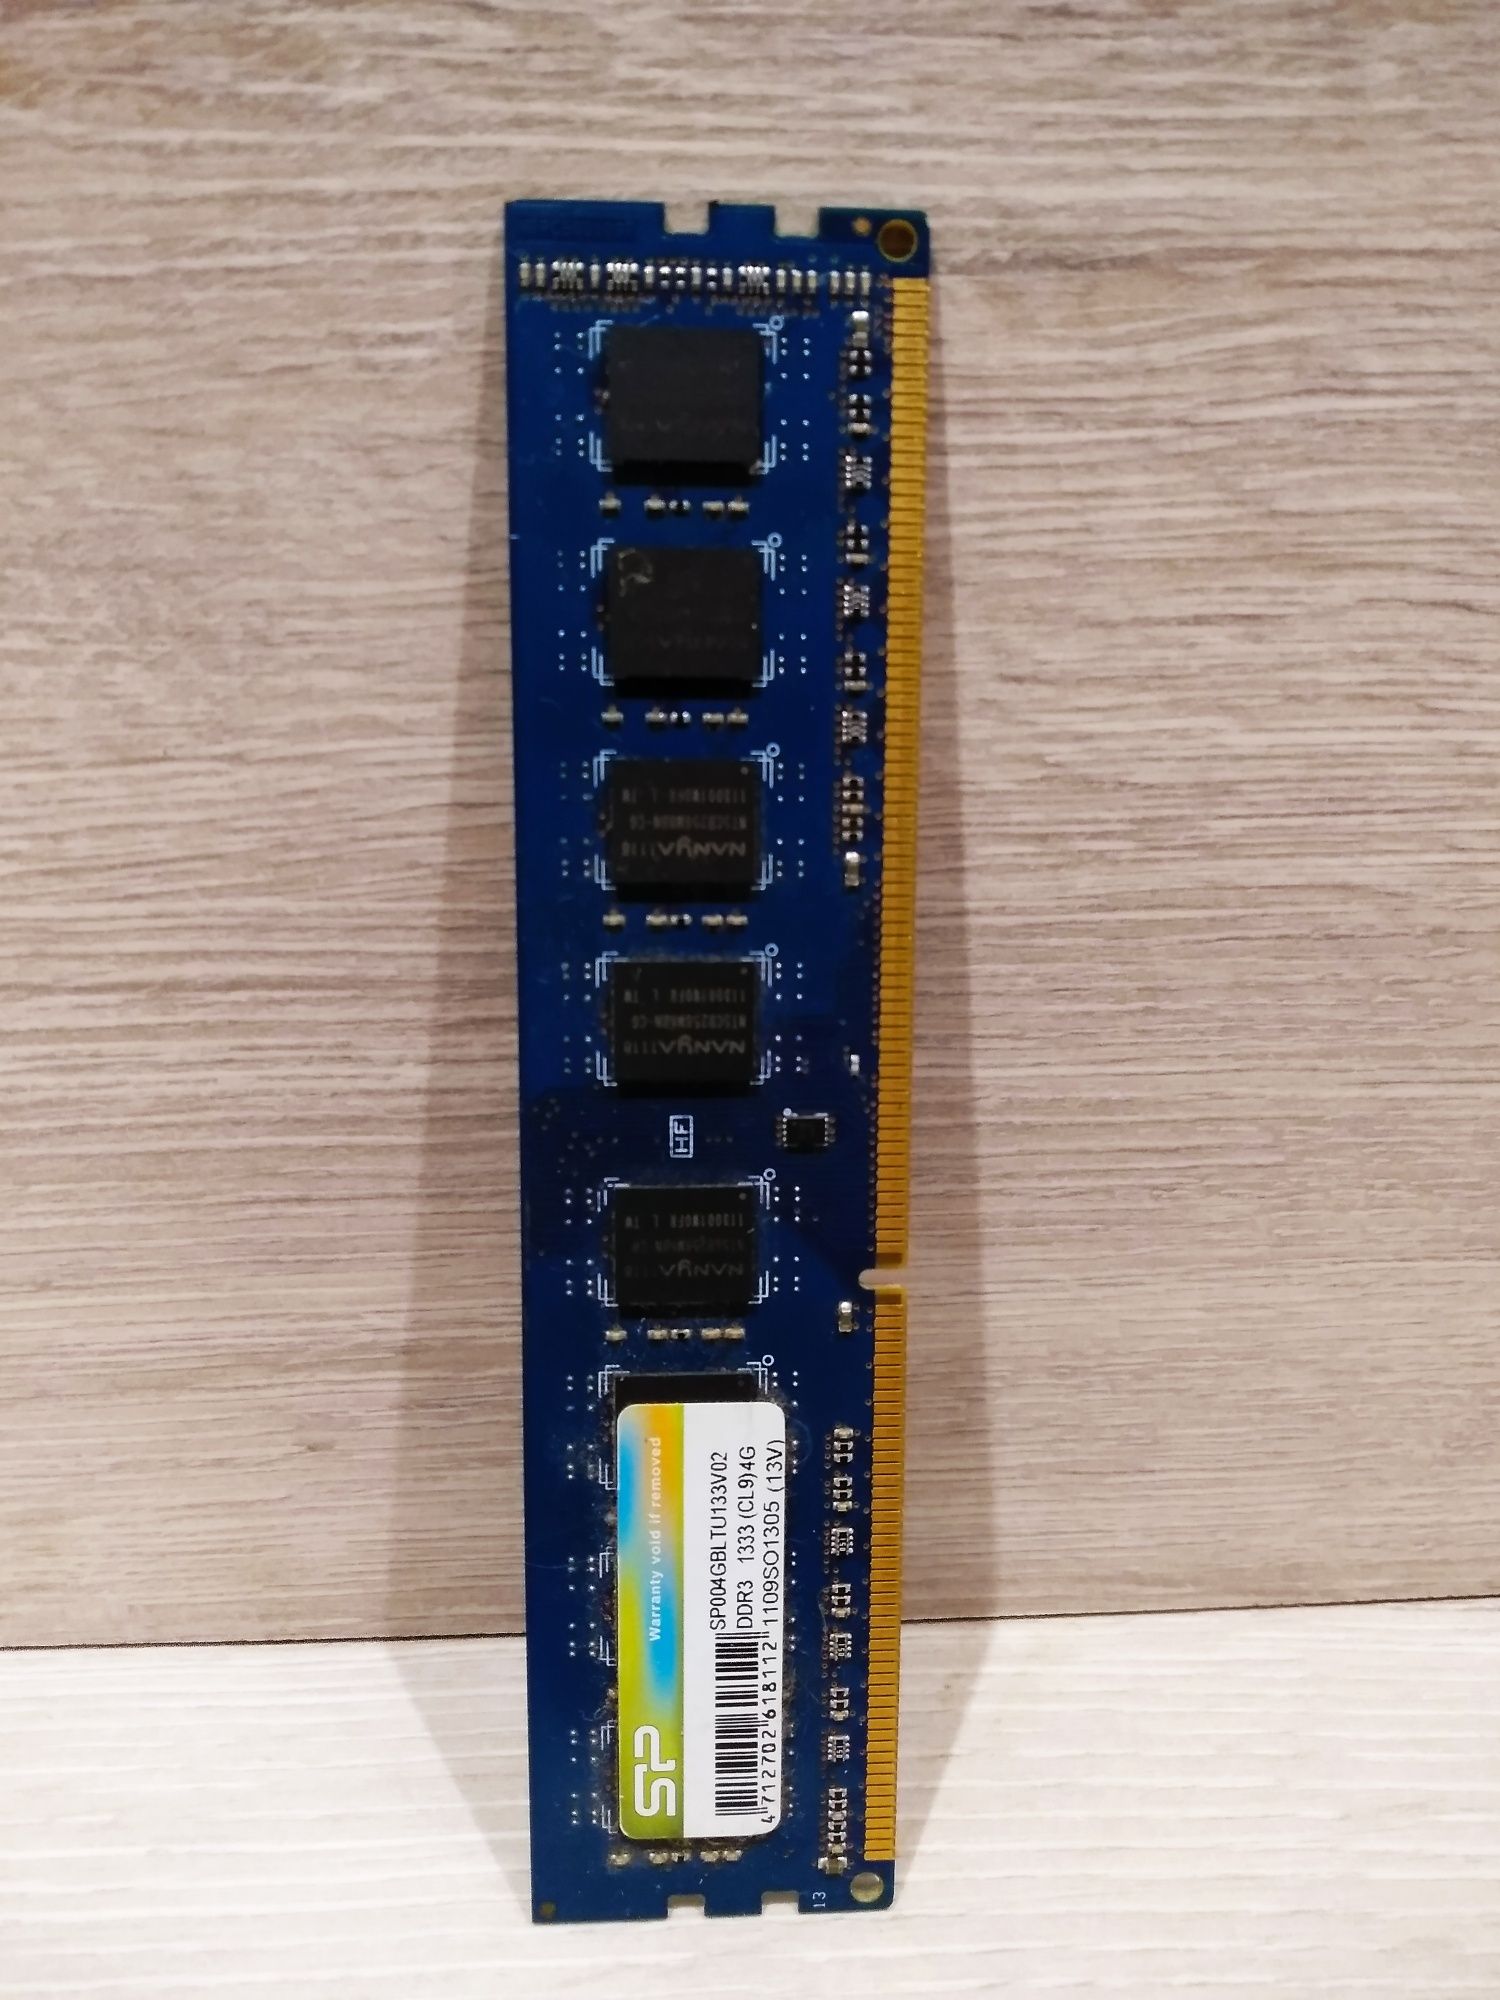 Память для ПК SILICON POWER DDR3 1333 4GB (SP004GBLTU133V02)